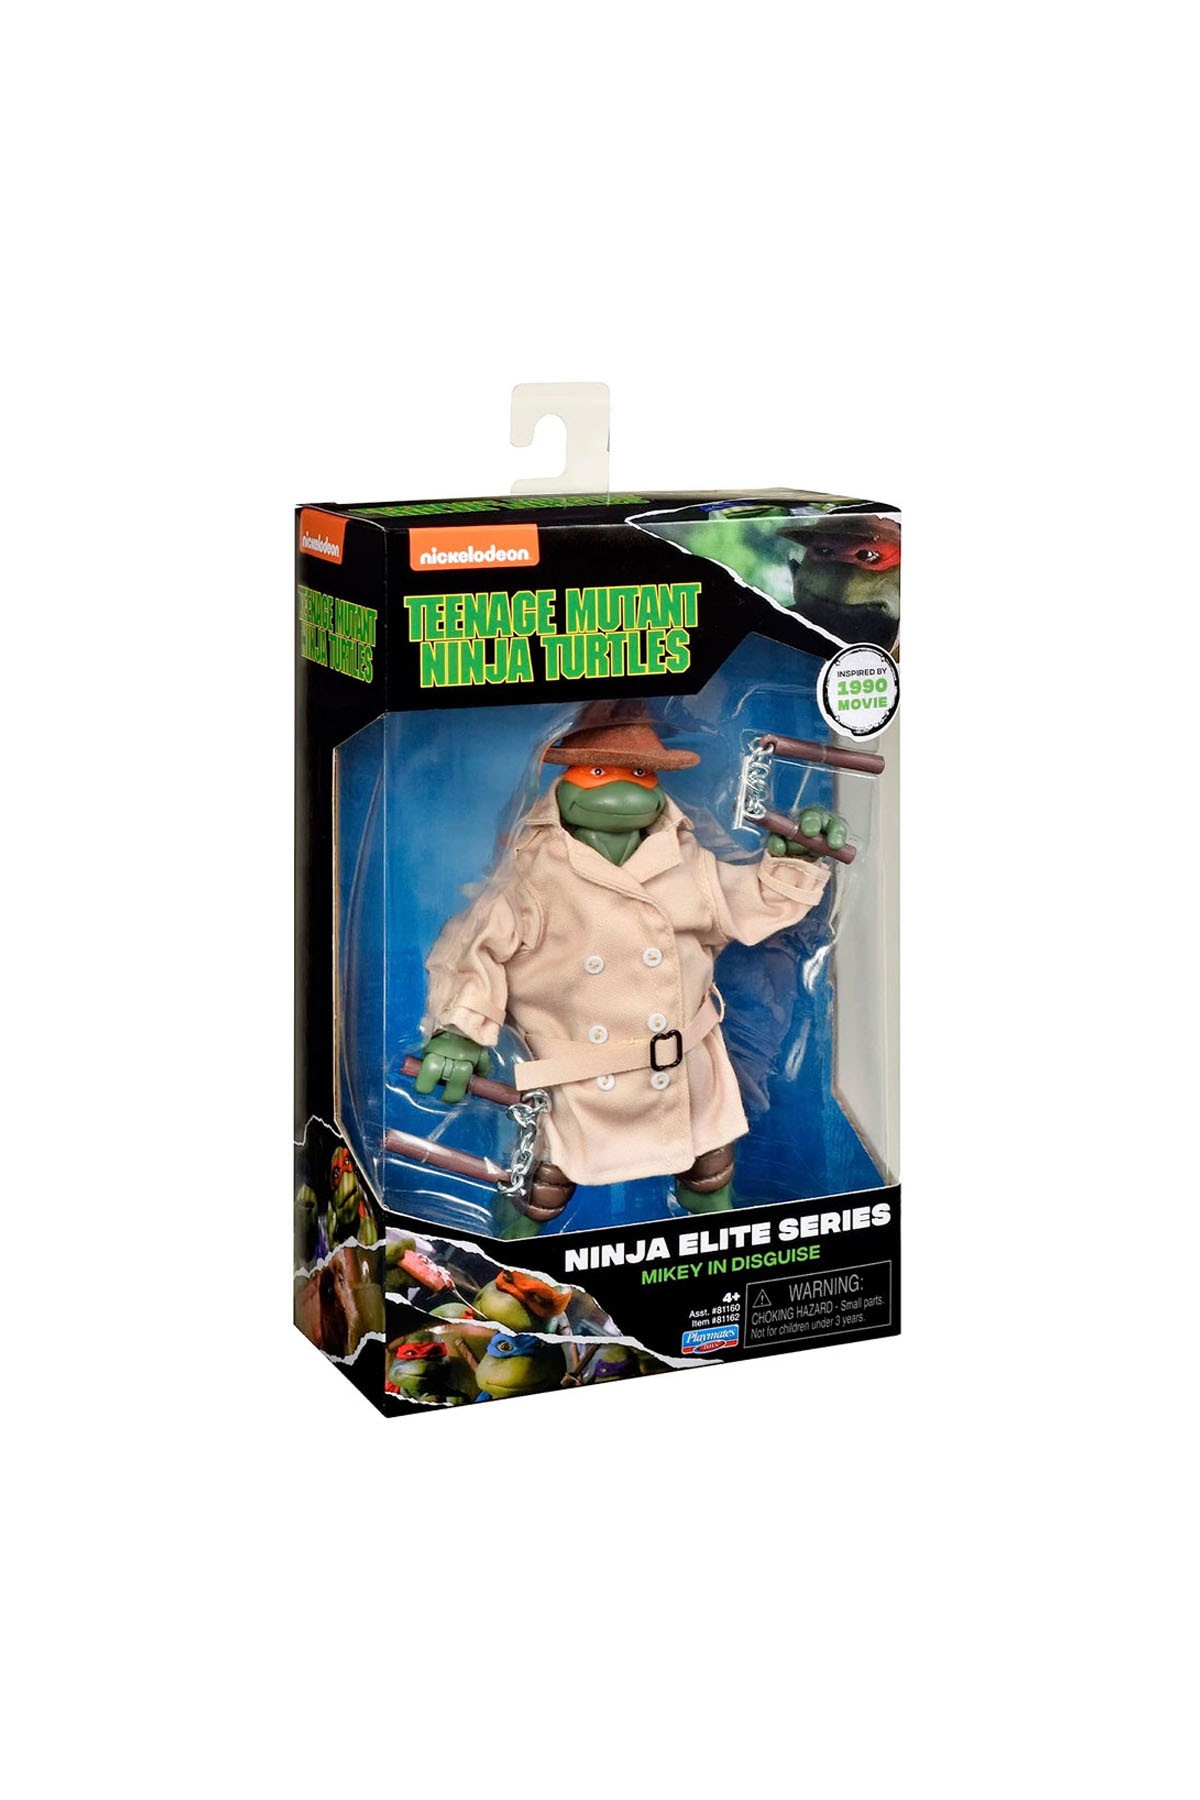 Ninja Turtles TMNT Özel Figürler 81160